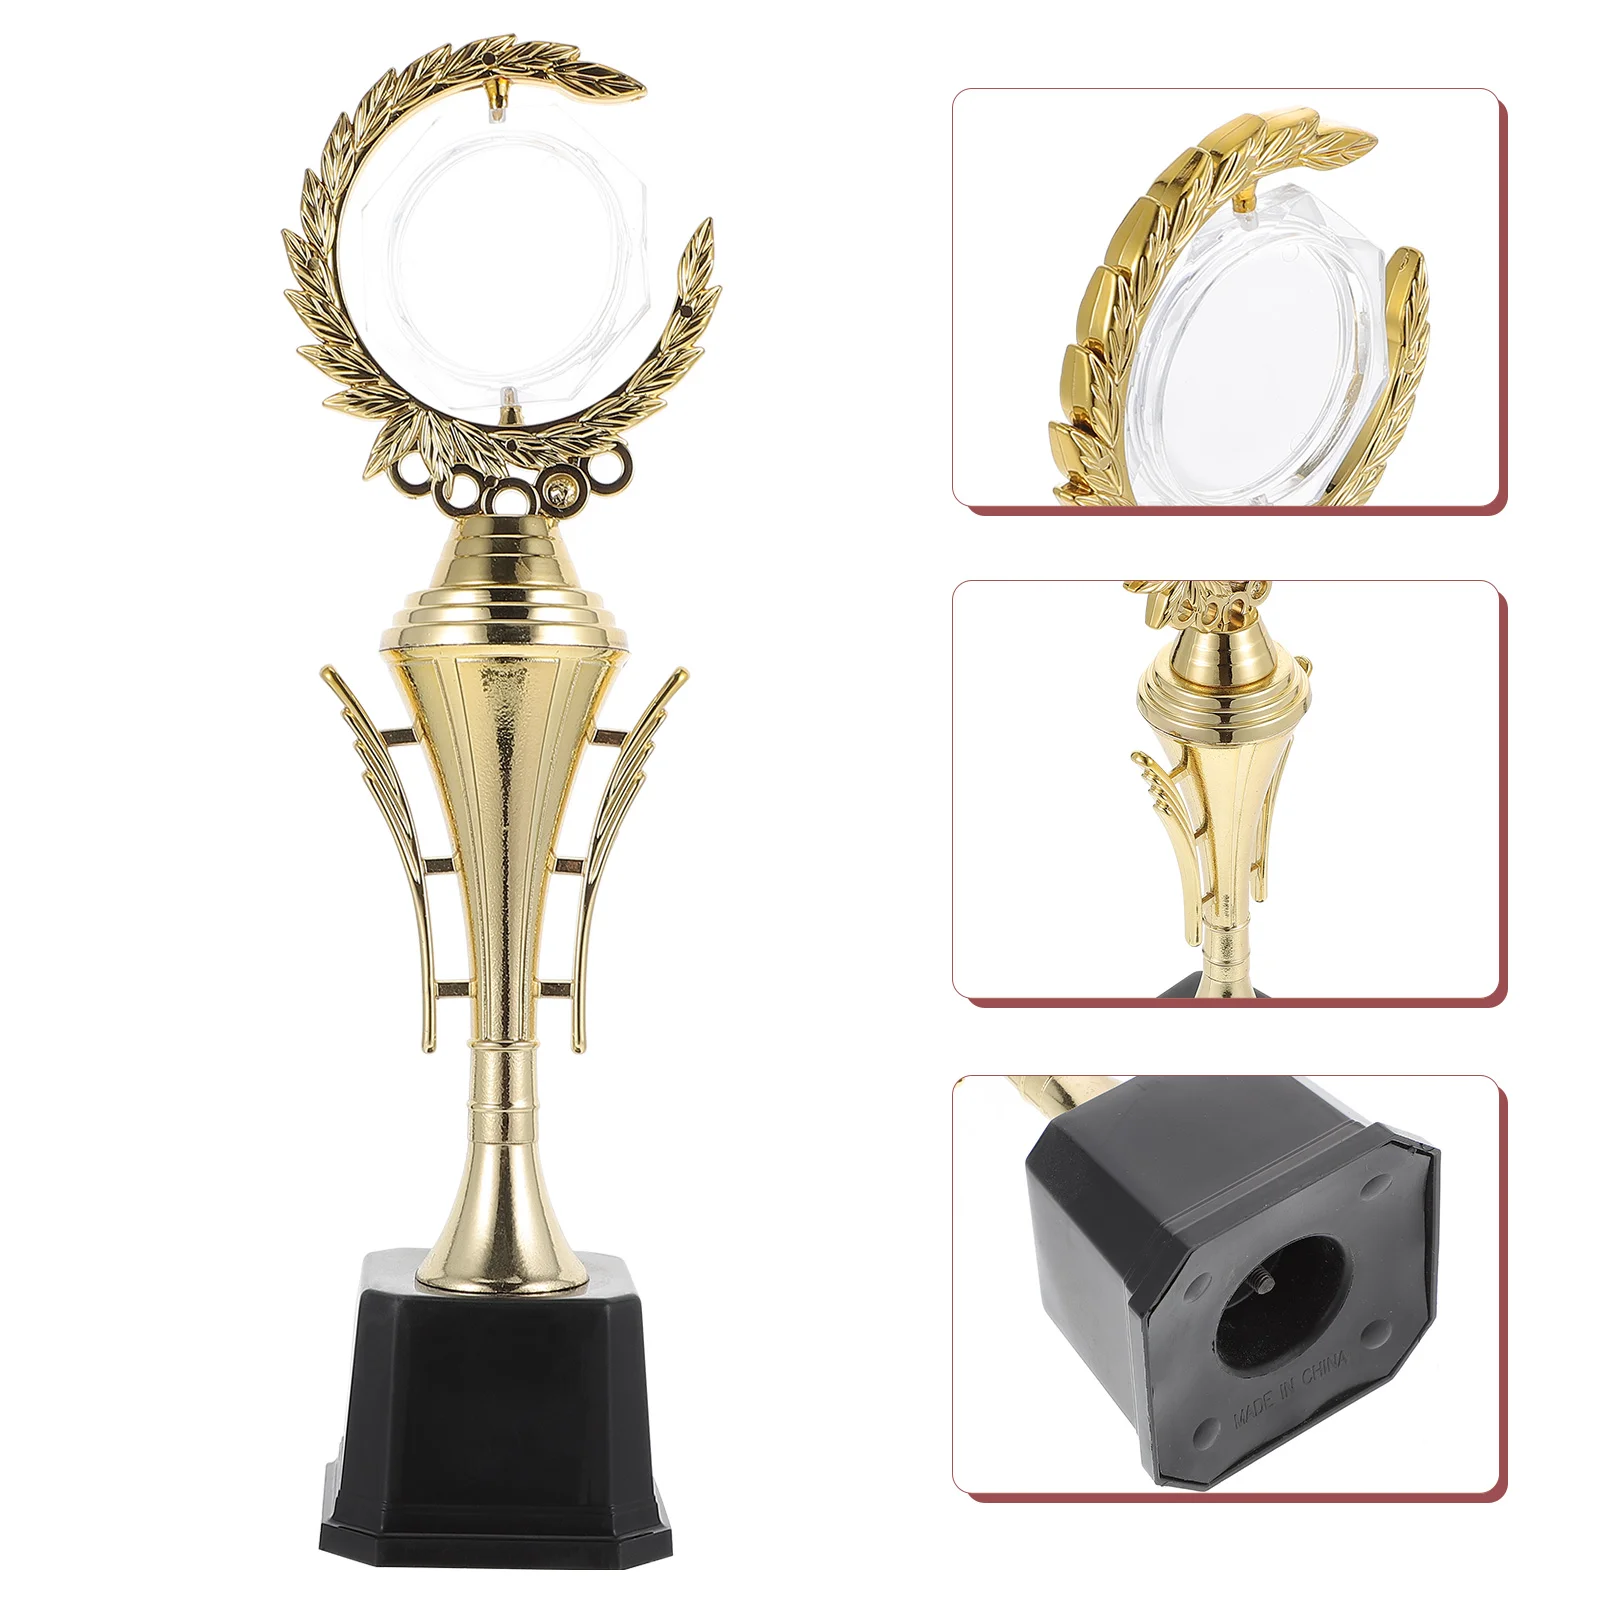 

Трофей золотой награды, универсальный пластиковый трофей для искусственных сувениров, реквизит, выигрышные призы, поставки сувениров ручной работы, праздничные подарки